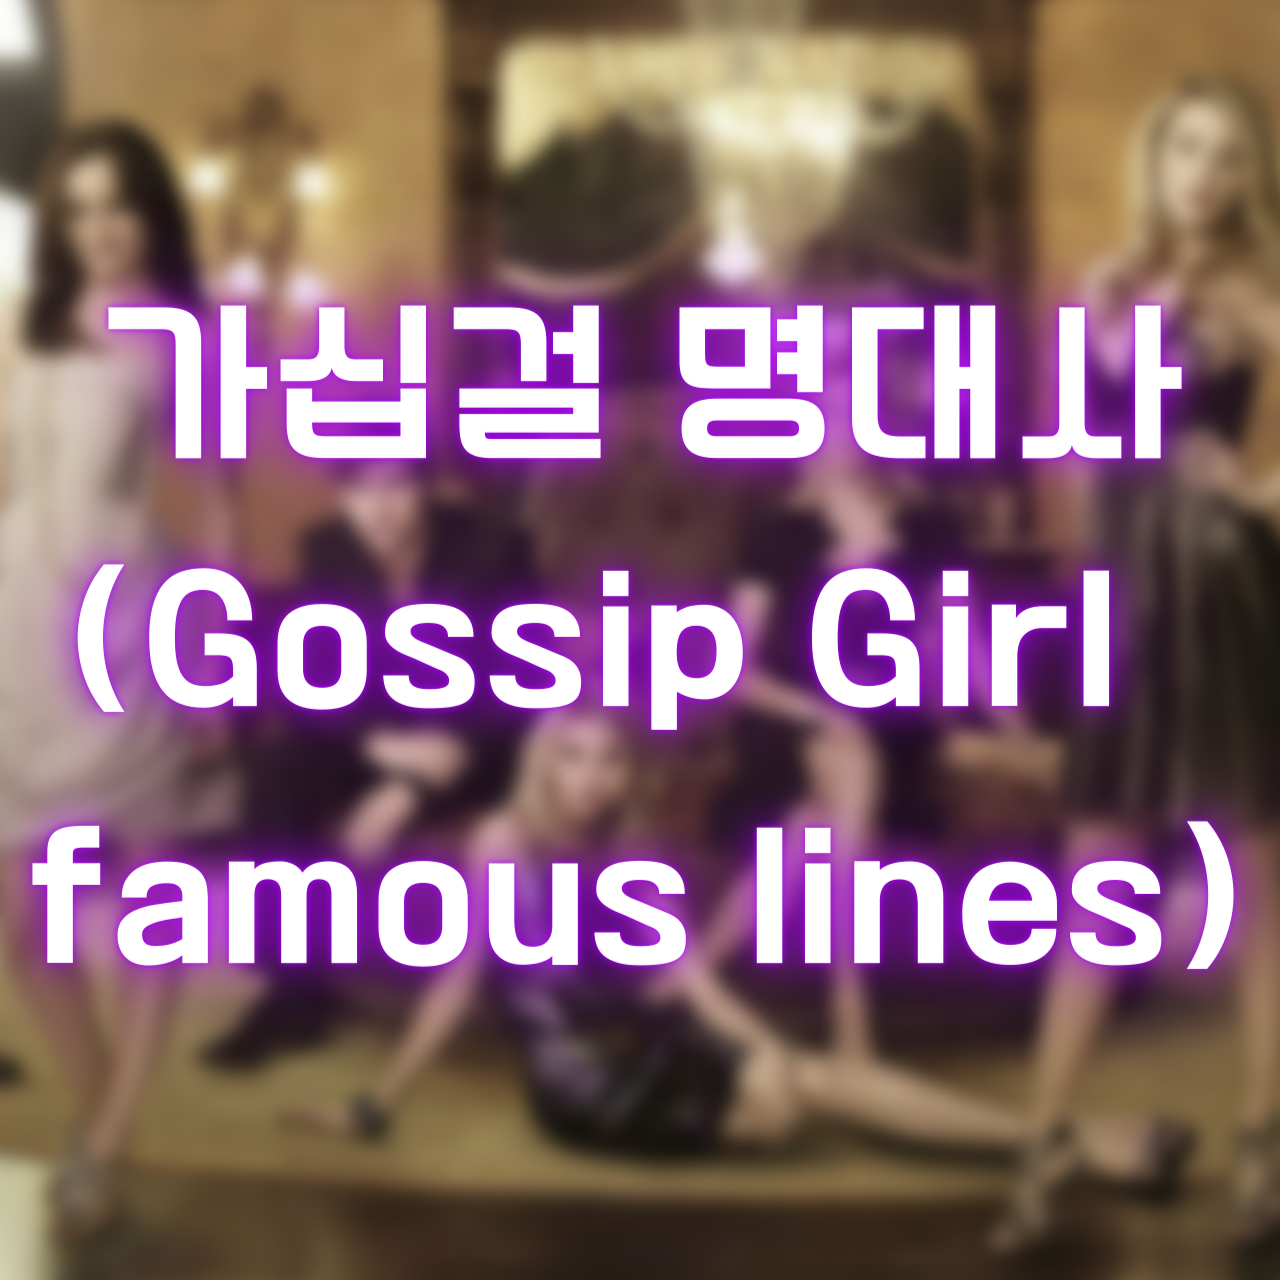 미드 가십걸 명대사 (Gossip Girl Quotes and famous lines)